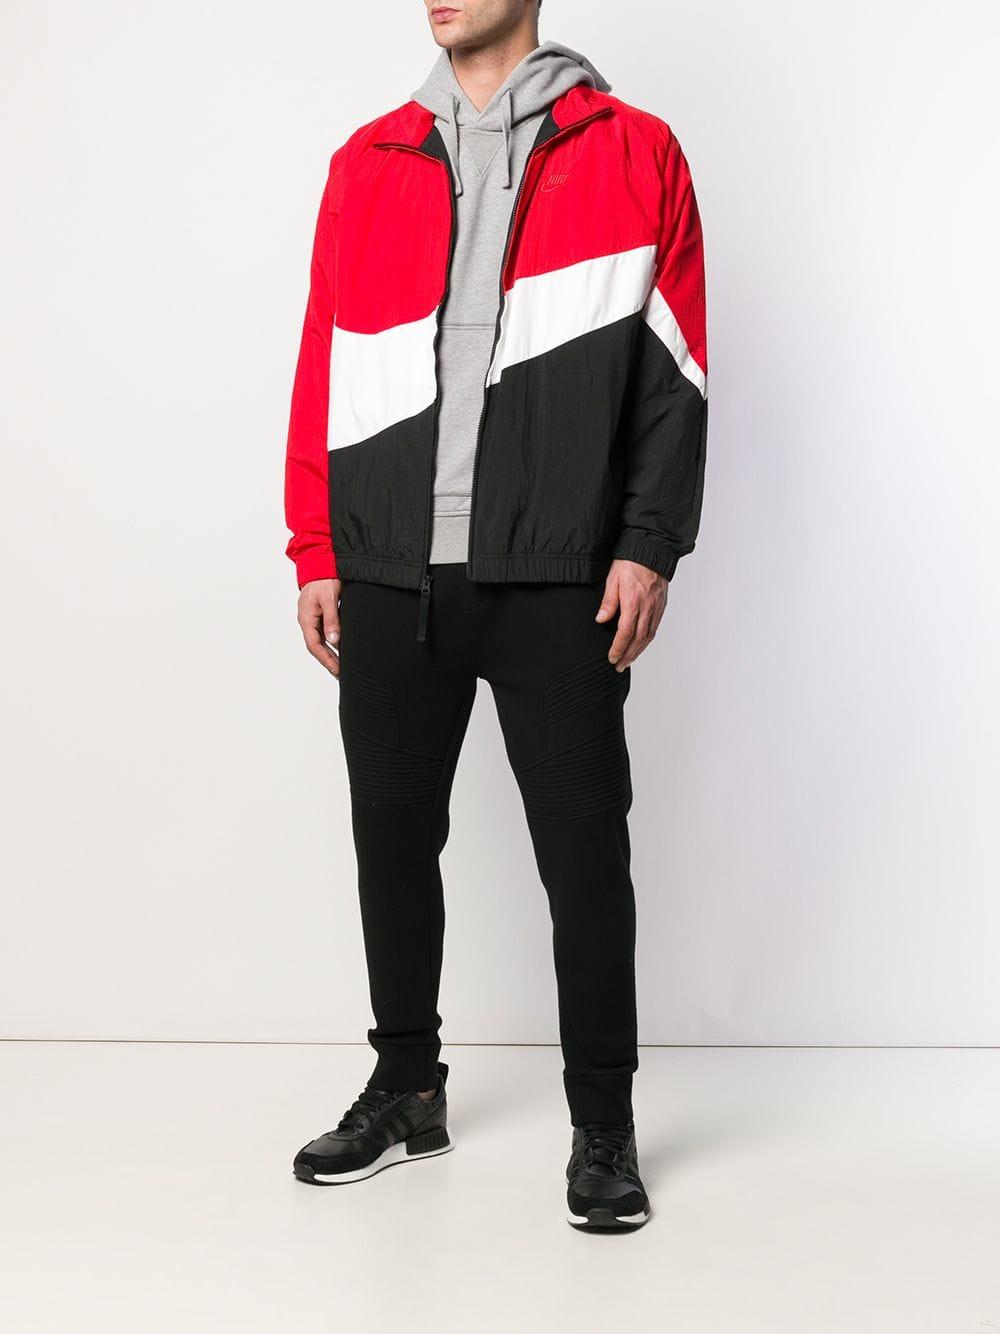 eend Discriminatie op grond van geslacht Preek Nike Large Swoosh Windbreaker Jacket in Red for Men | Lyst